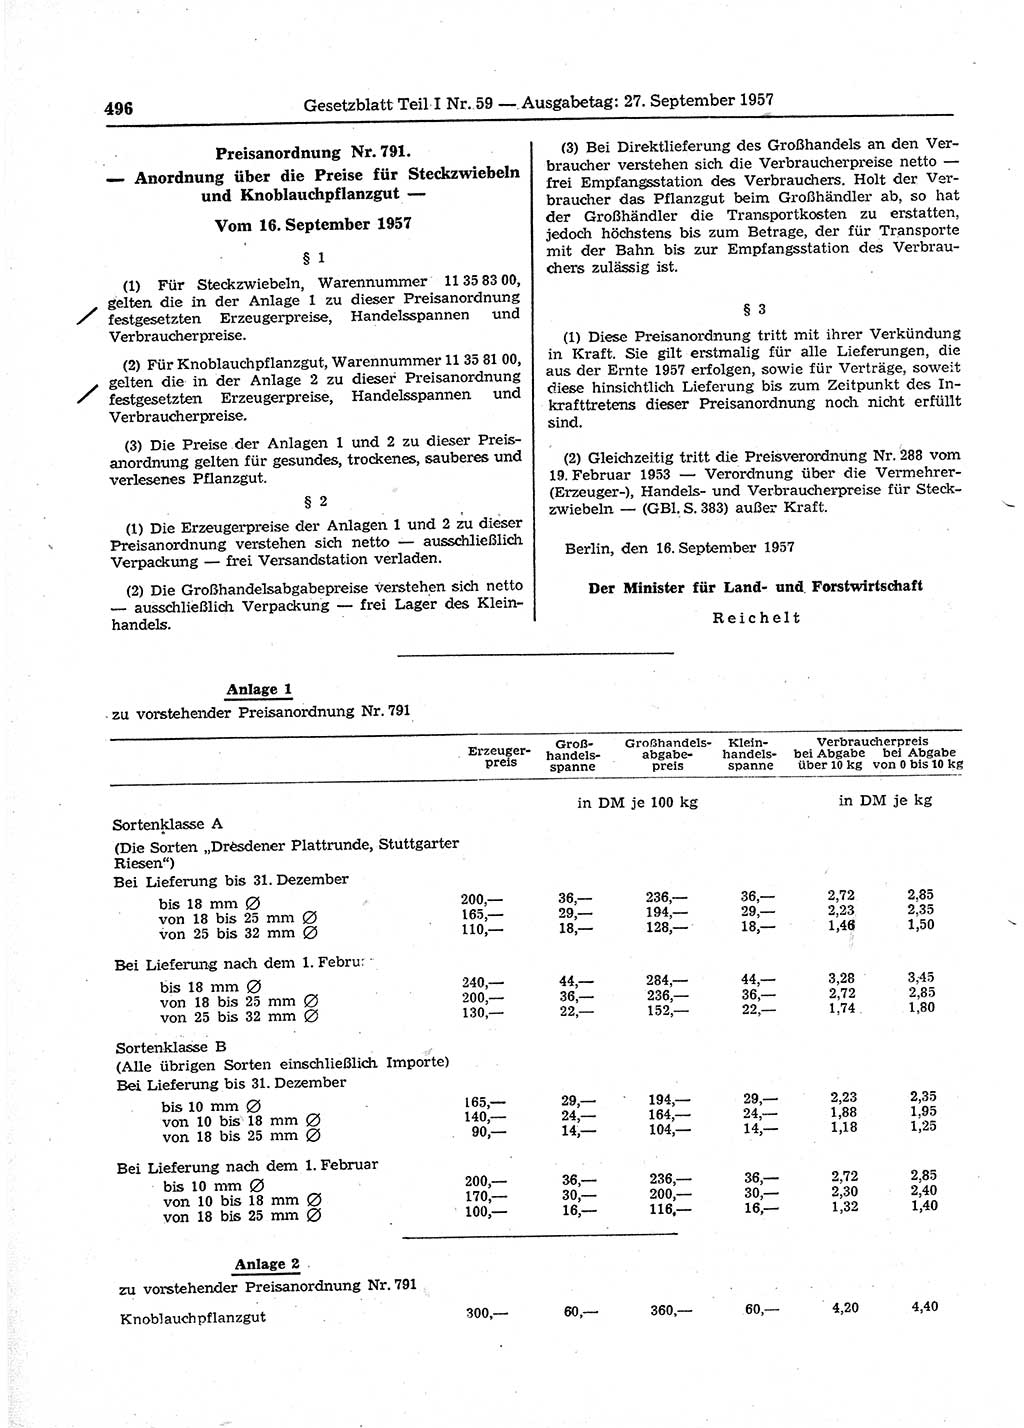 Gesetzblatt (GBl.) der Deutschen Demokratischen Republik (DDR) Teil Ⅰ 1957, Seite 496 (GBl. DDR Ⅰ 1957, S. 496)